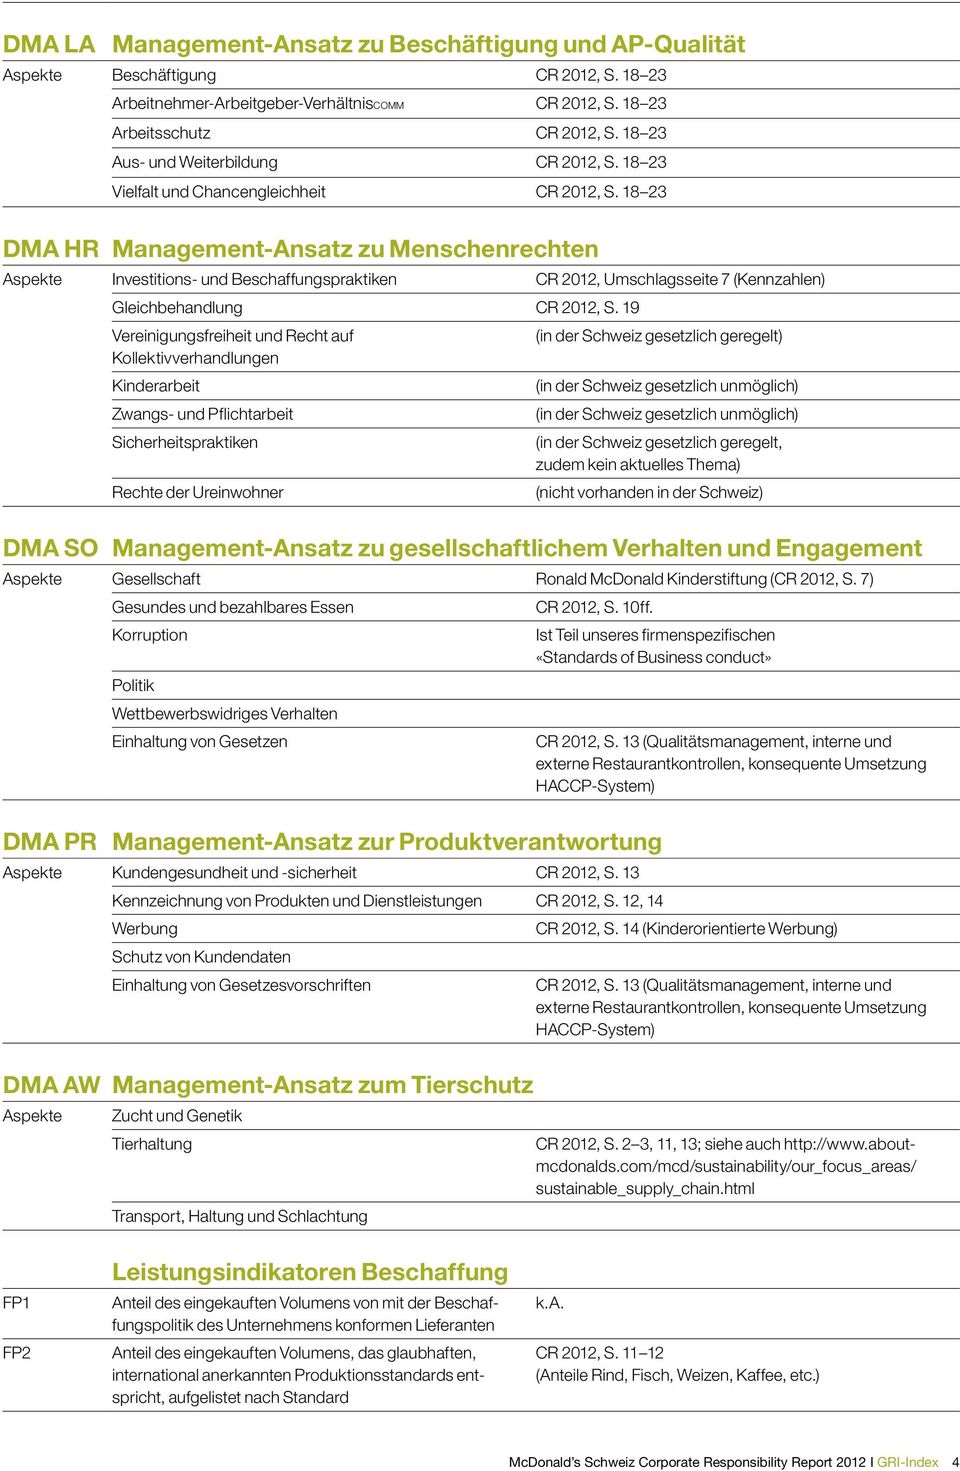 18 23 DMA HR Management-Ansatz zu Menschenrechten Aspekte Investitions- und Beschaffungspraktiken CR 2012, Umschlagsseite 7 (Kennzahlen) Gleichbehandlung CR 2012, S.